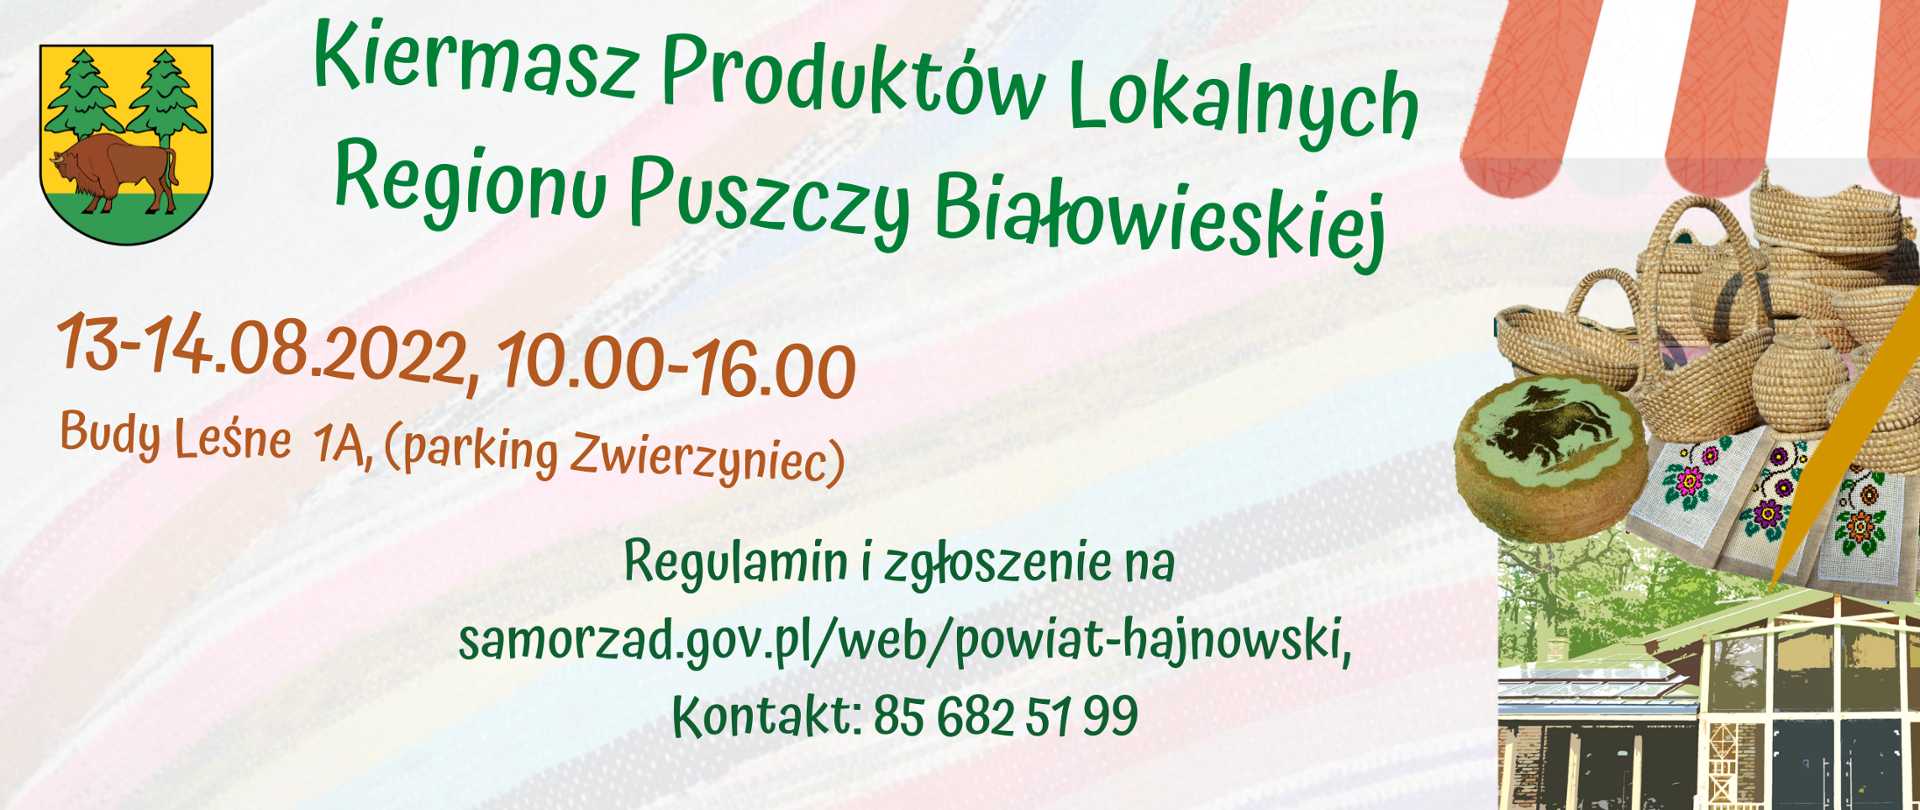 Kiermasz Produktów Lokalnych Regionu Puszczy Białowieskiej, 13-14.08.2022 Budy Leśne 1A 